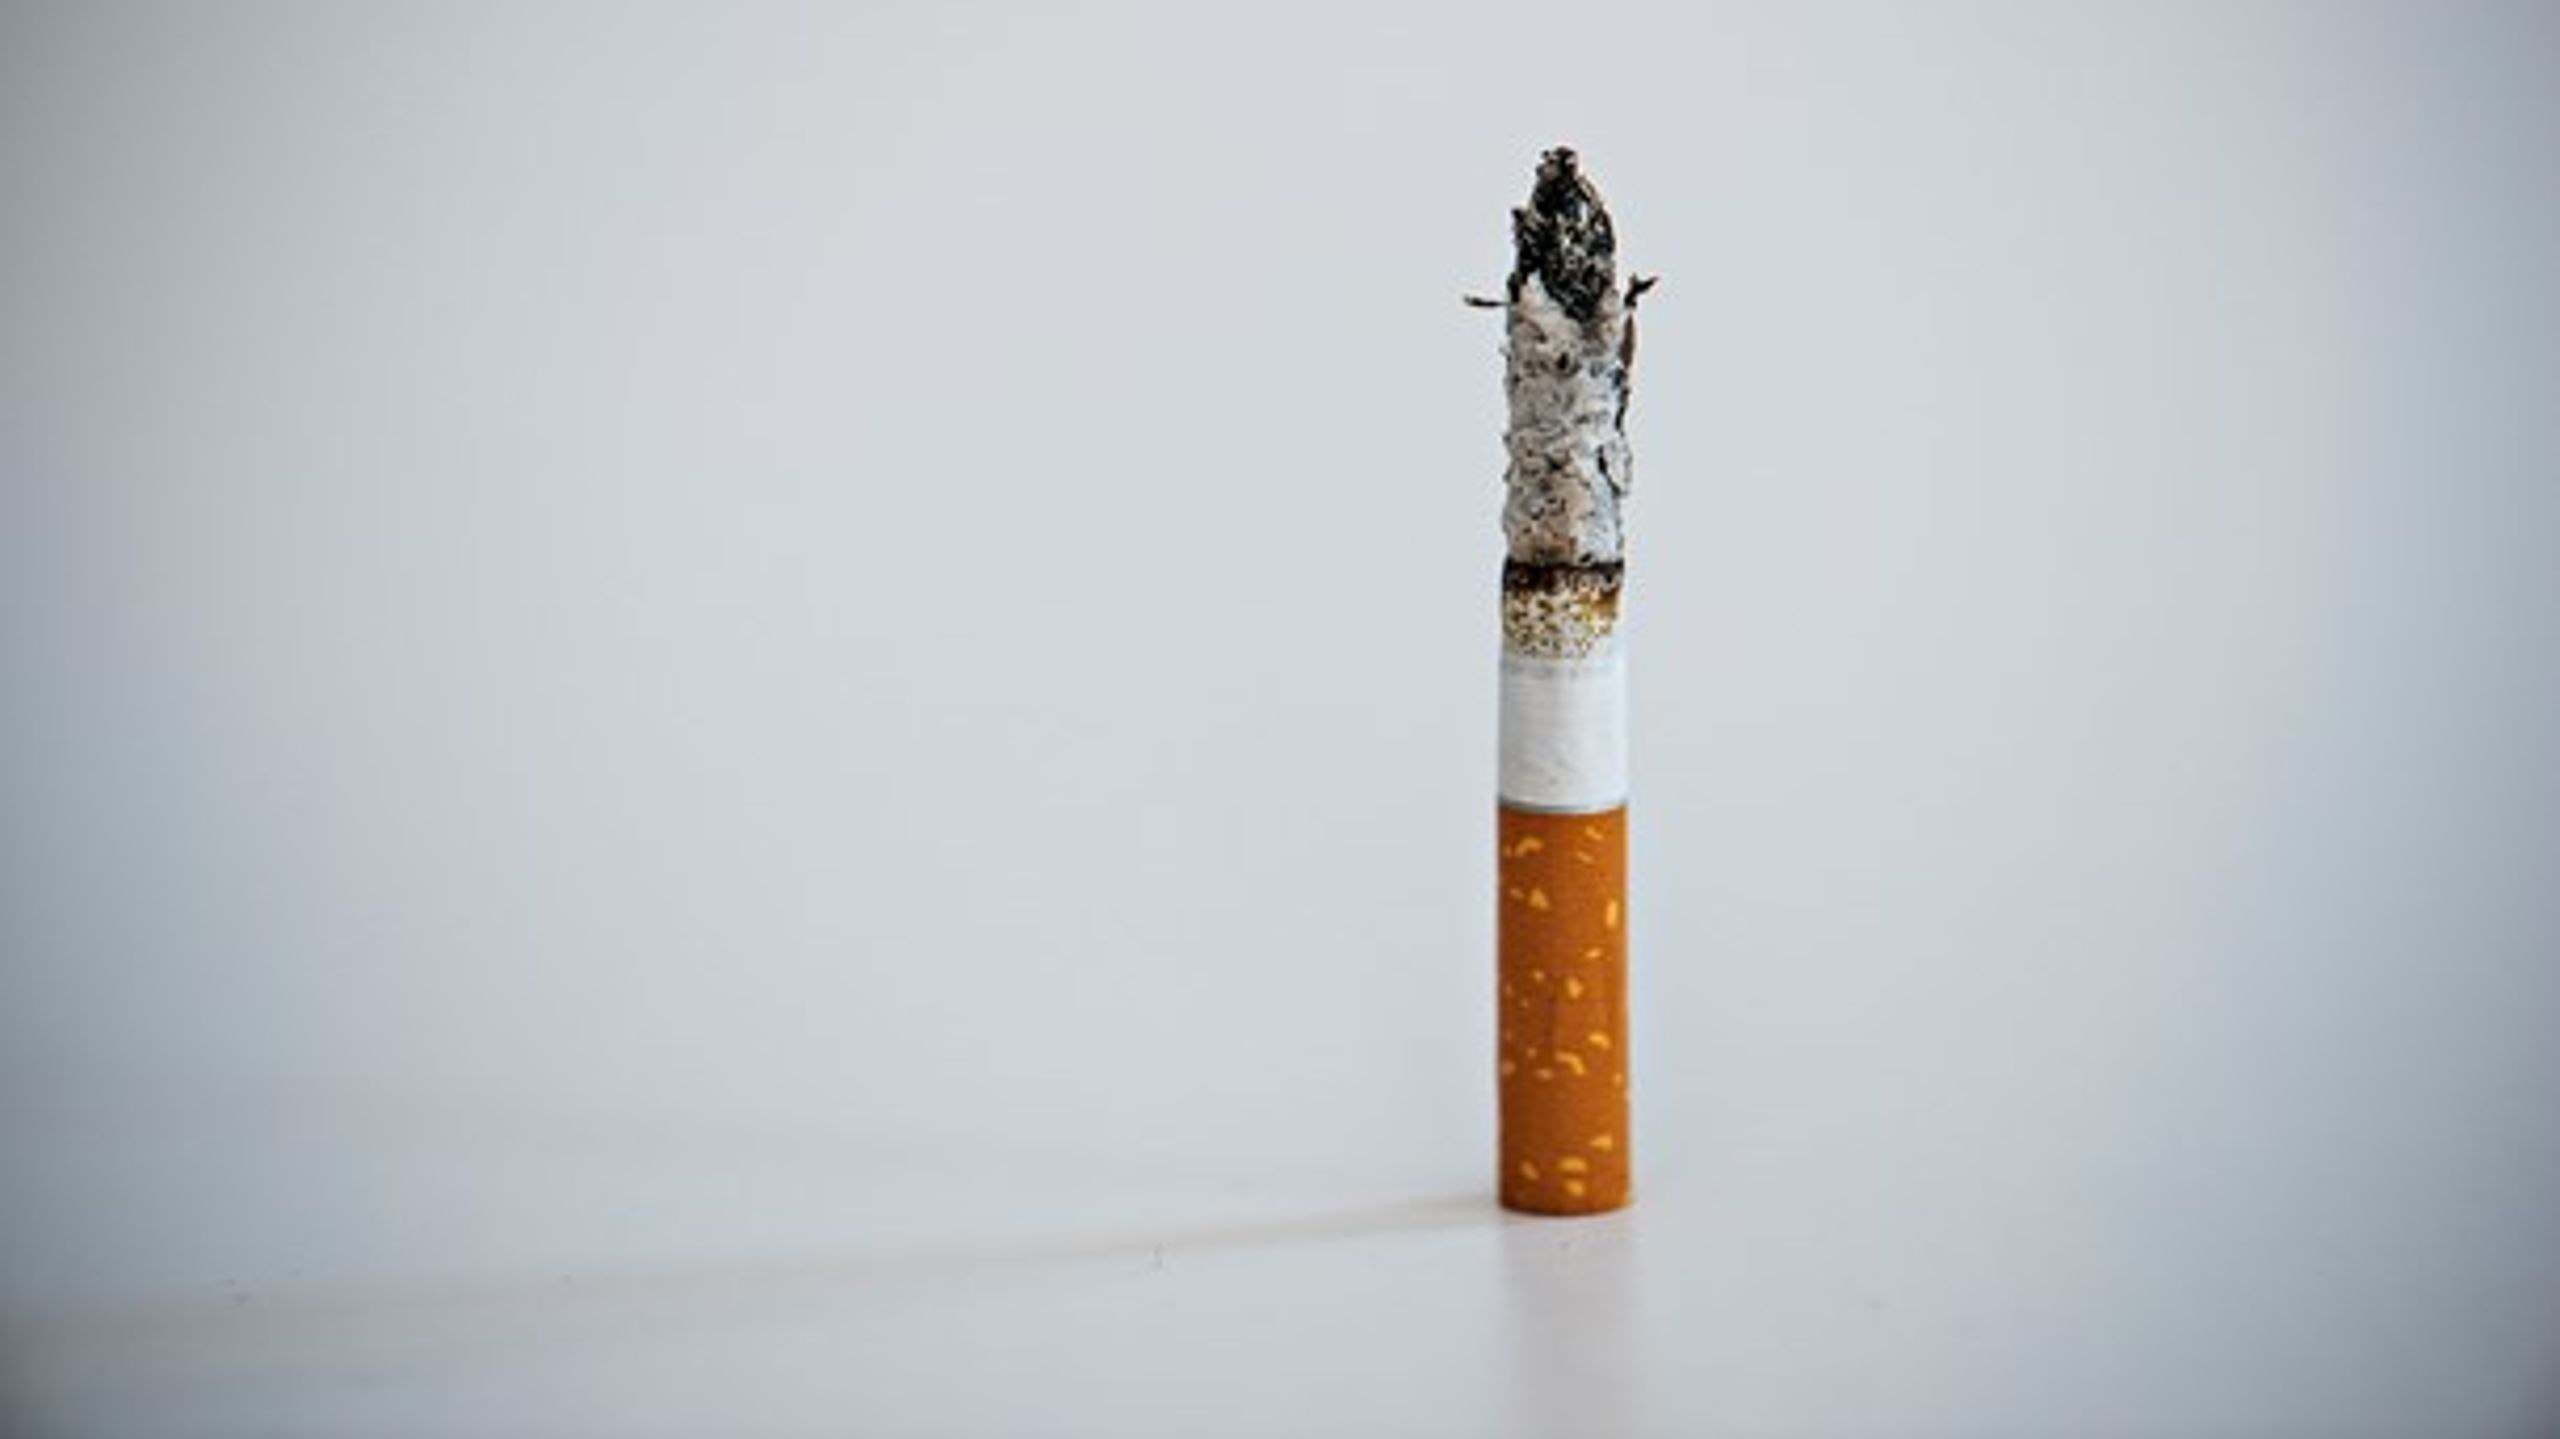 Hver dag begynder 40 børn og unge at ryge. Det er et problem, der ikke er til at komme udenom. Det er løsningerne heller ikke, skriver tre sundhedsaktører.